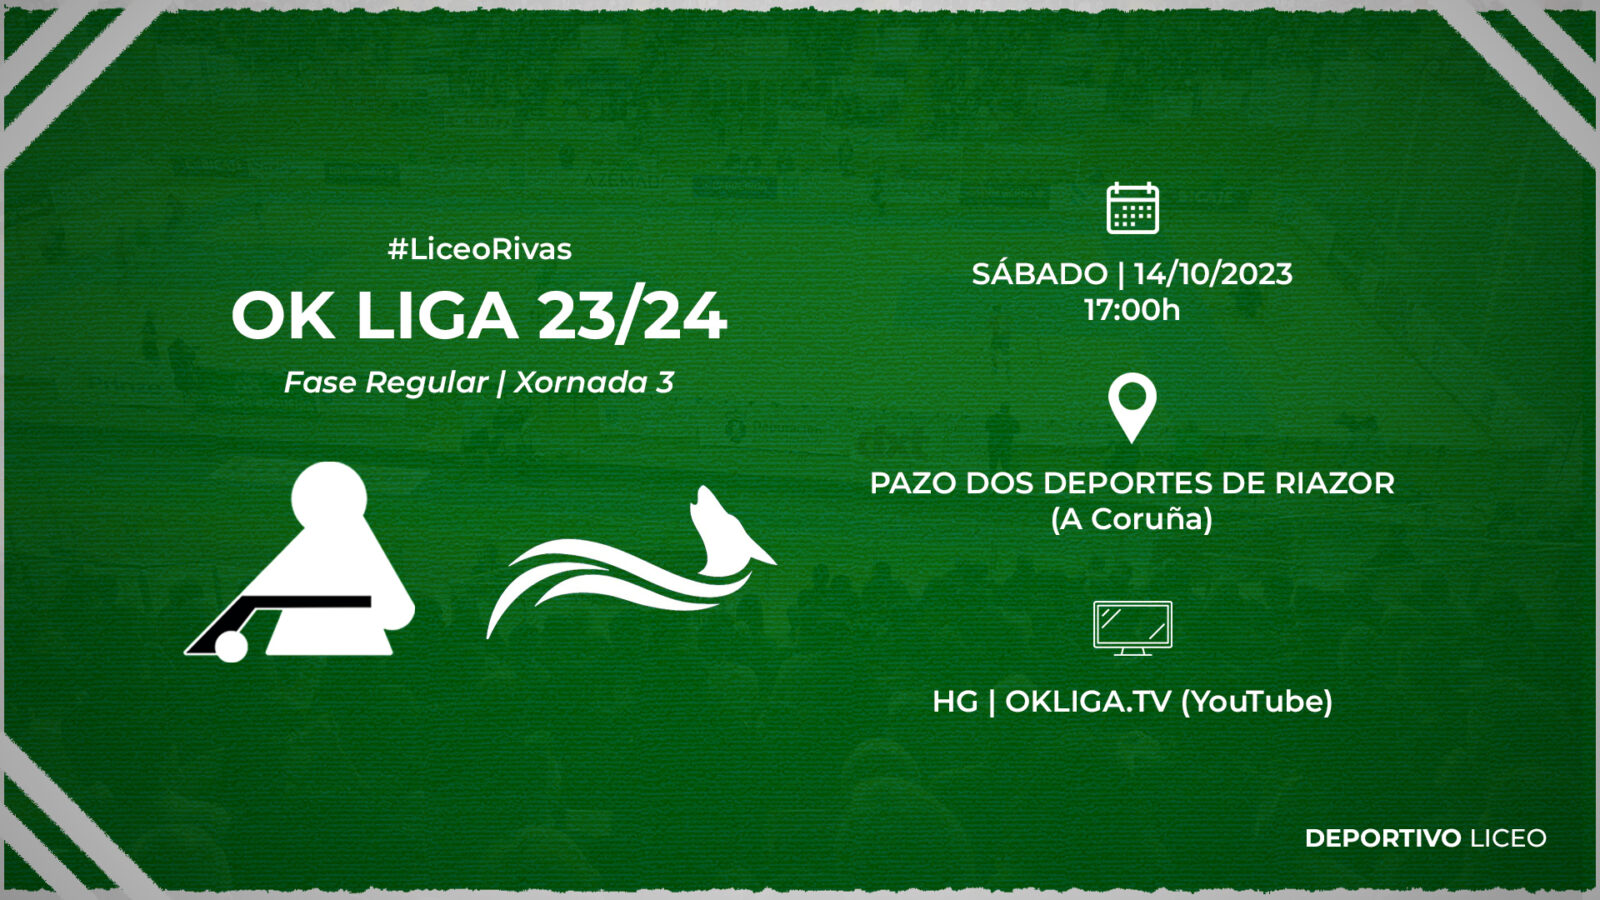 #LiceoRivas | ENTRADAS para la jornada 3 de la OK Liga 23/24 (sábado 14, 17:00h)